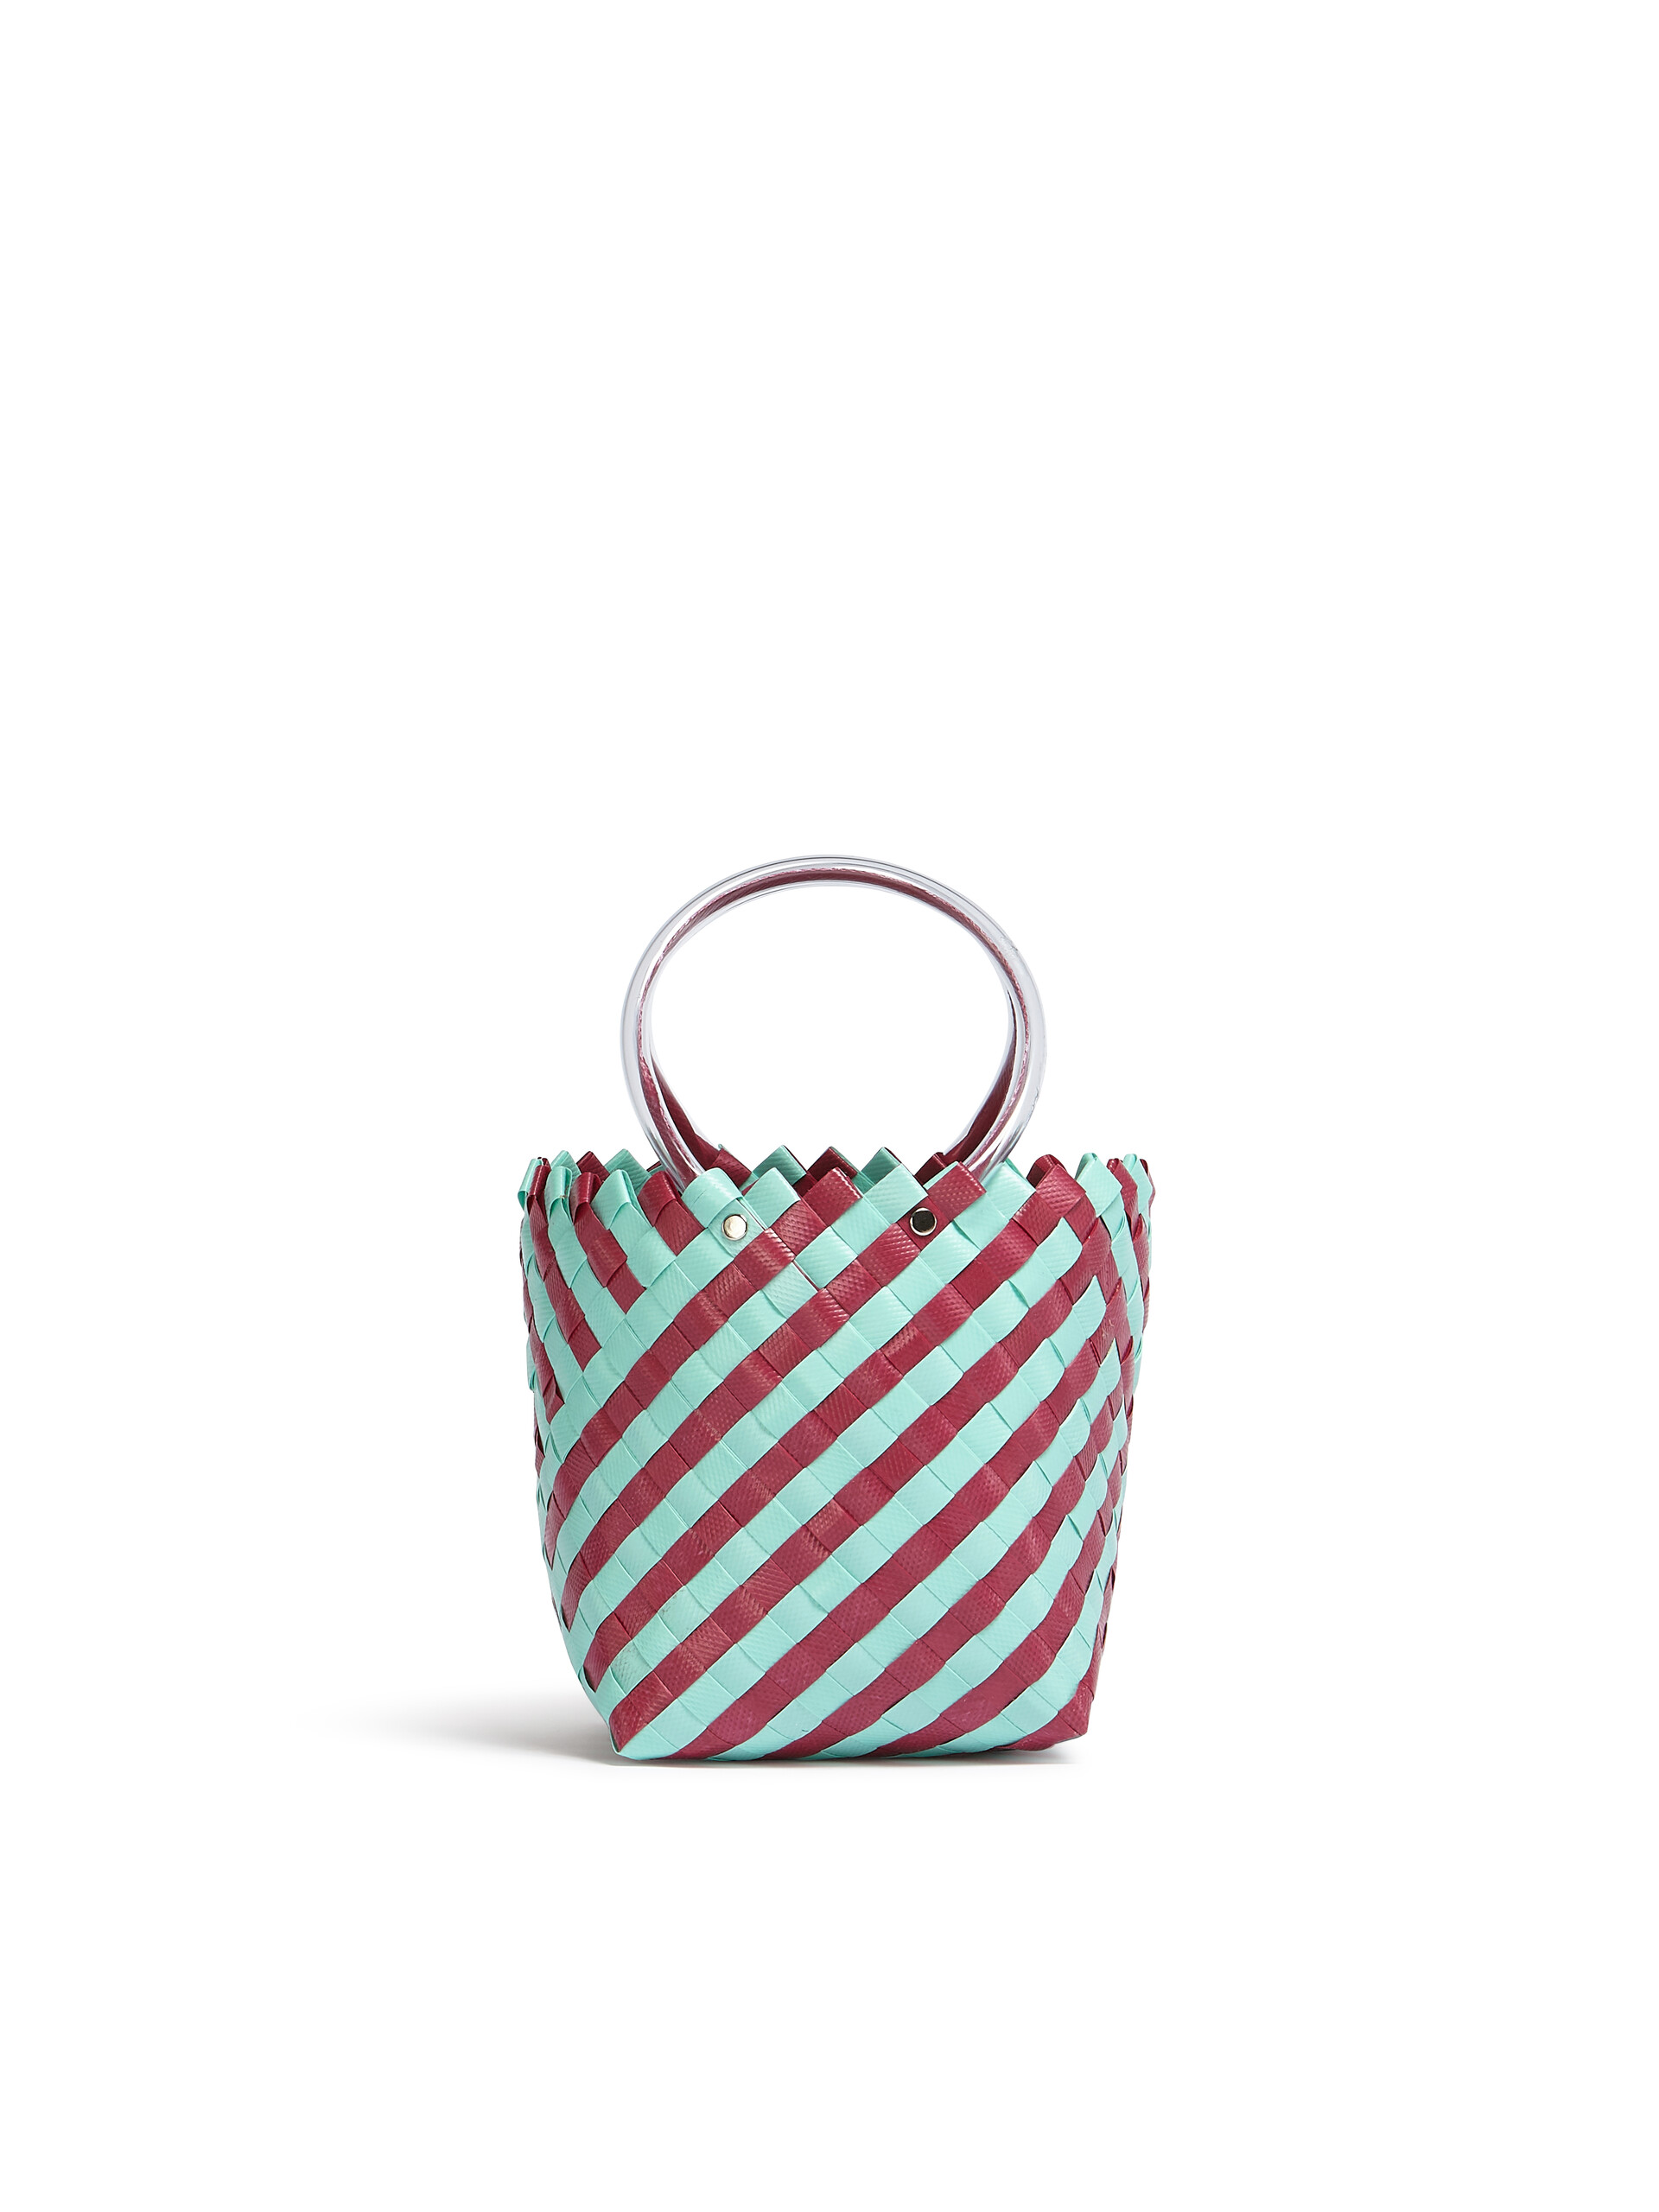 MARNI MARKET TAHA Tasche aus Gewebe in Grün und Burgunderrot - Shopper - Image 3